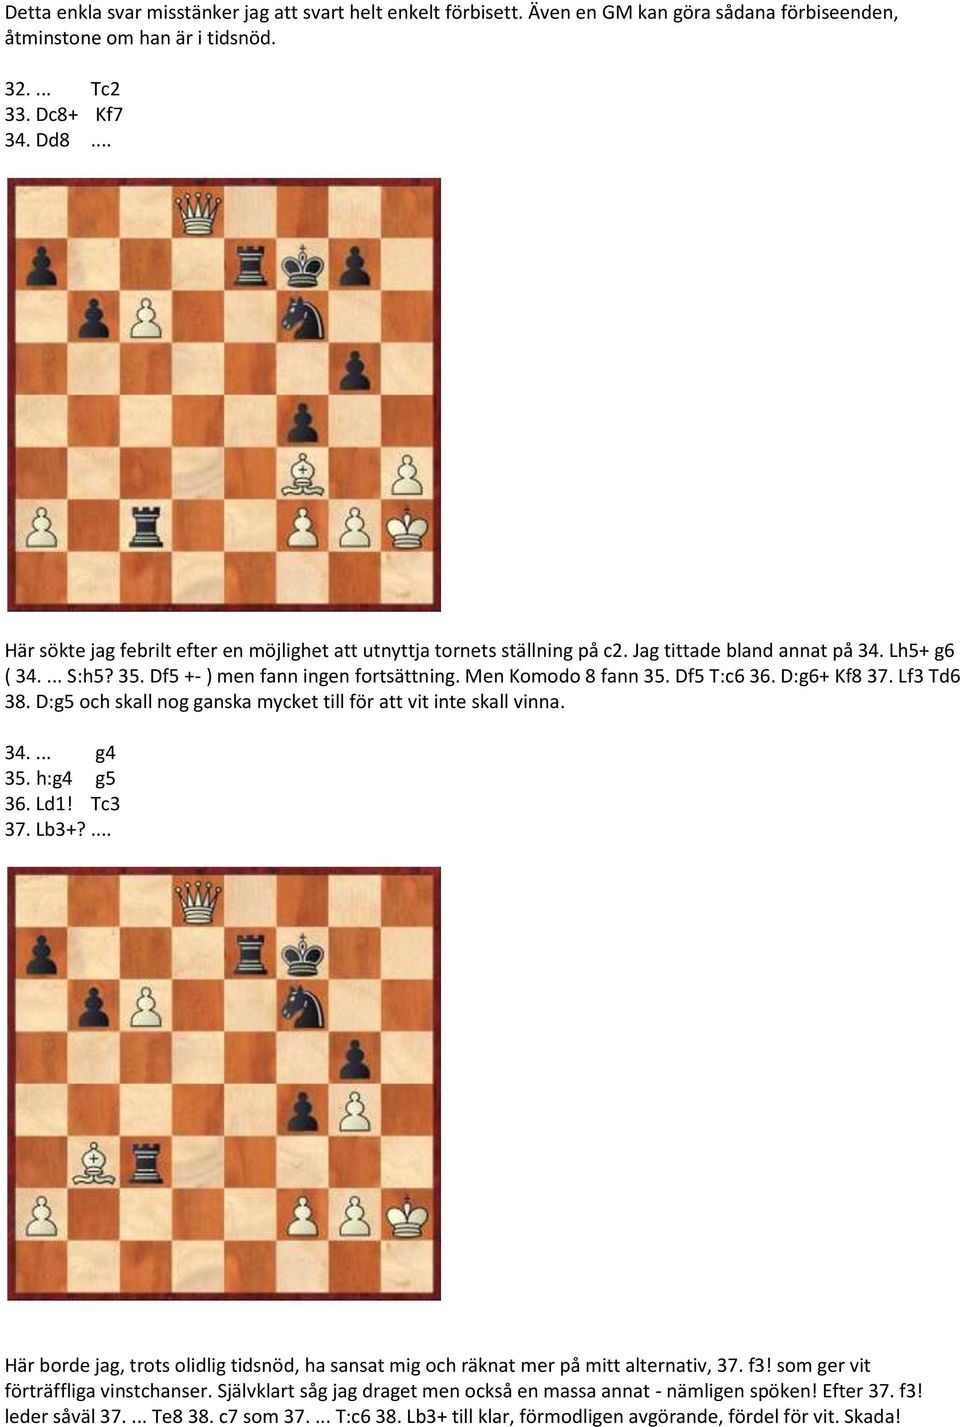 Df5 T:c6 36. D:g6+ Kf8 37. Lf3 Td6 38. D:g5 och skall nog ganska mycket till för att vit inte skall vinna. 34.... g4 35. h:g4 g5 36. Ld1! Tc3 37. Lb3+?